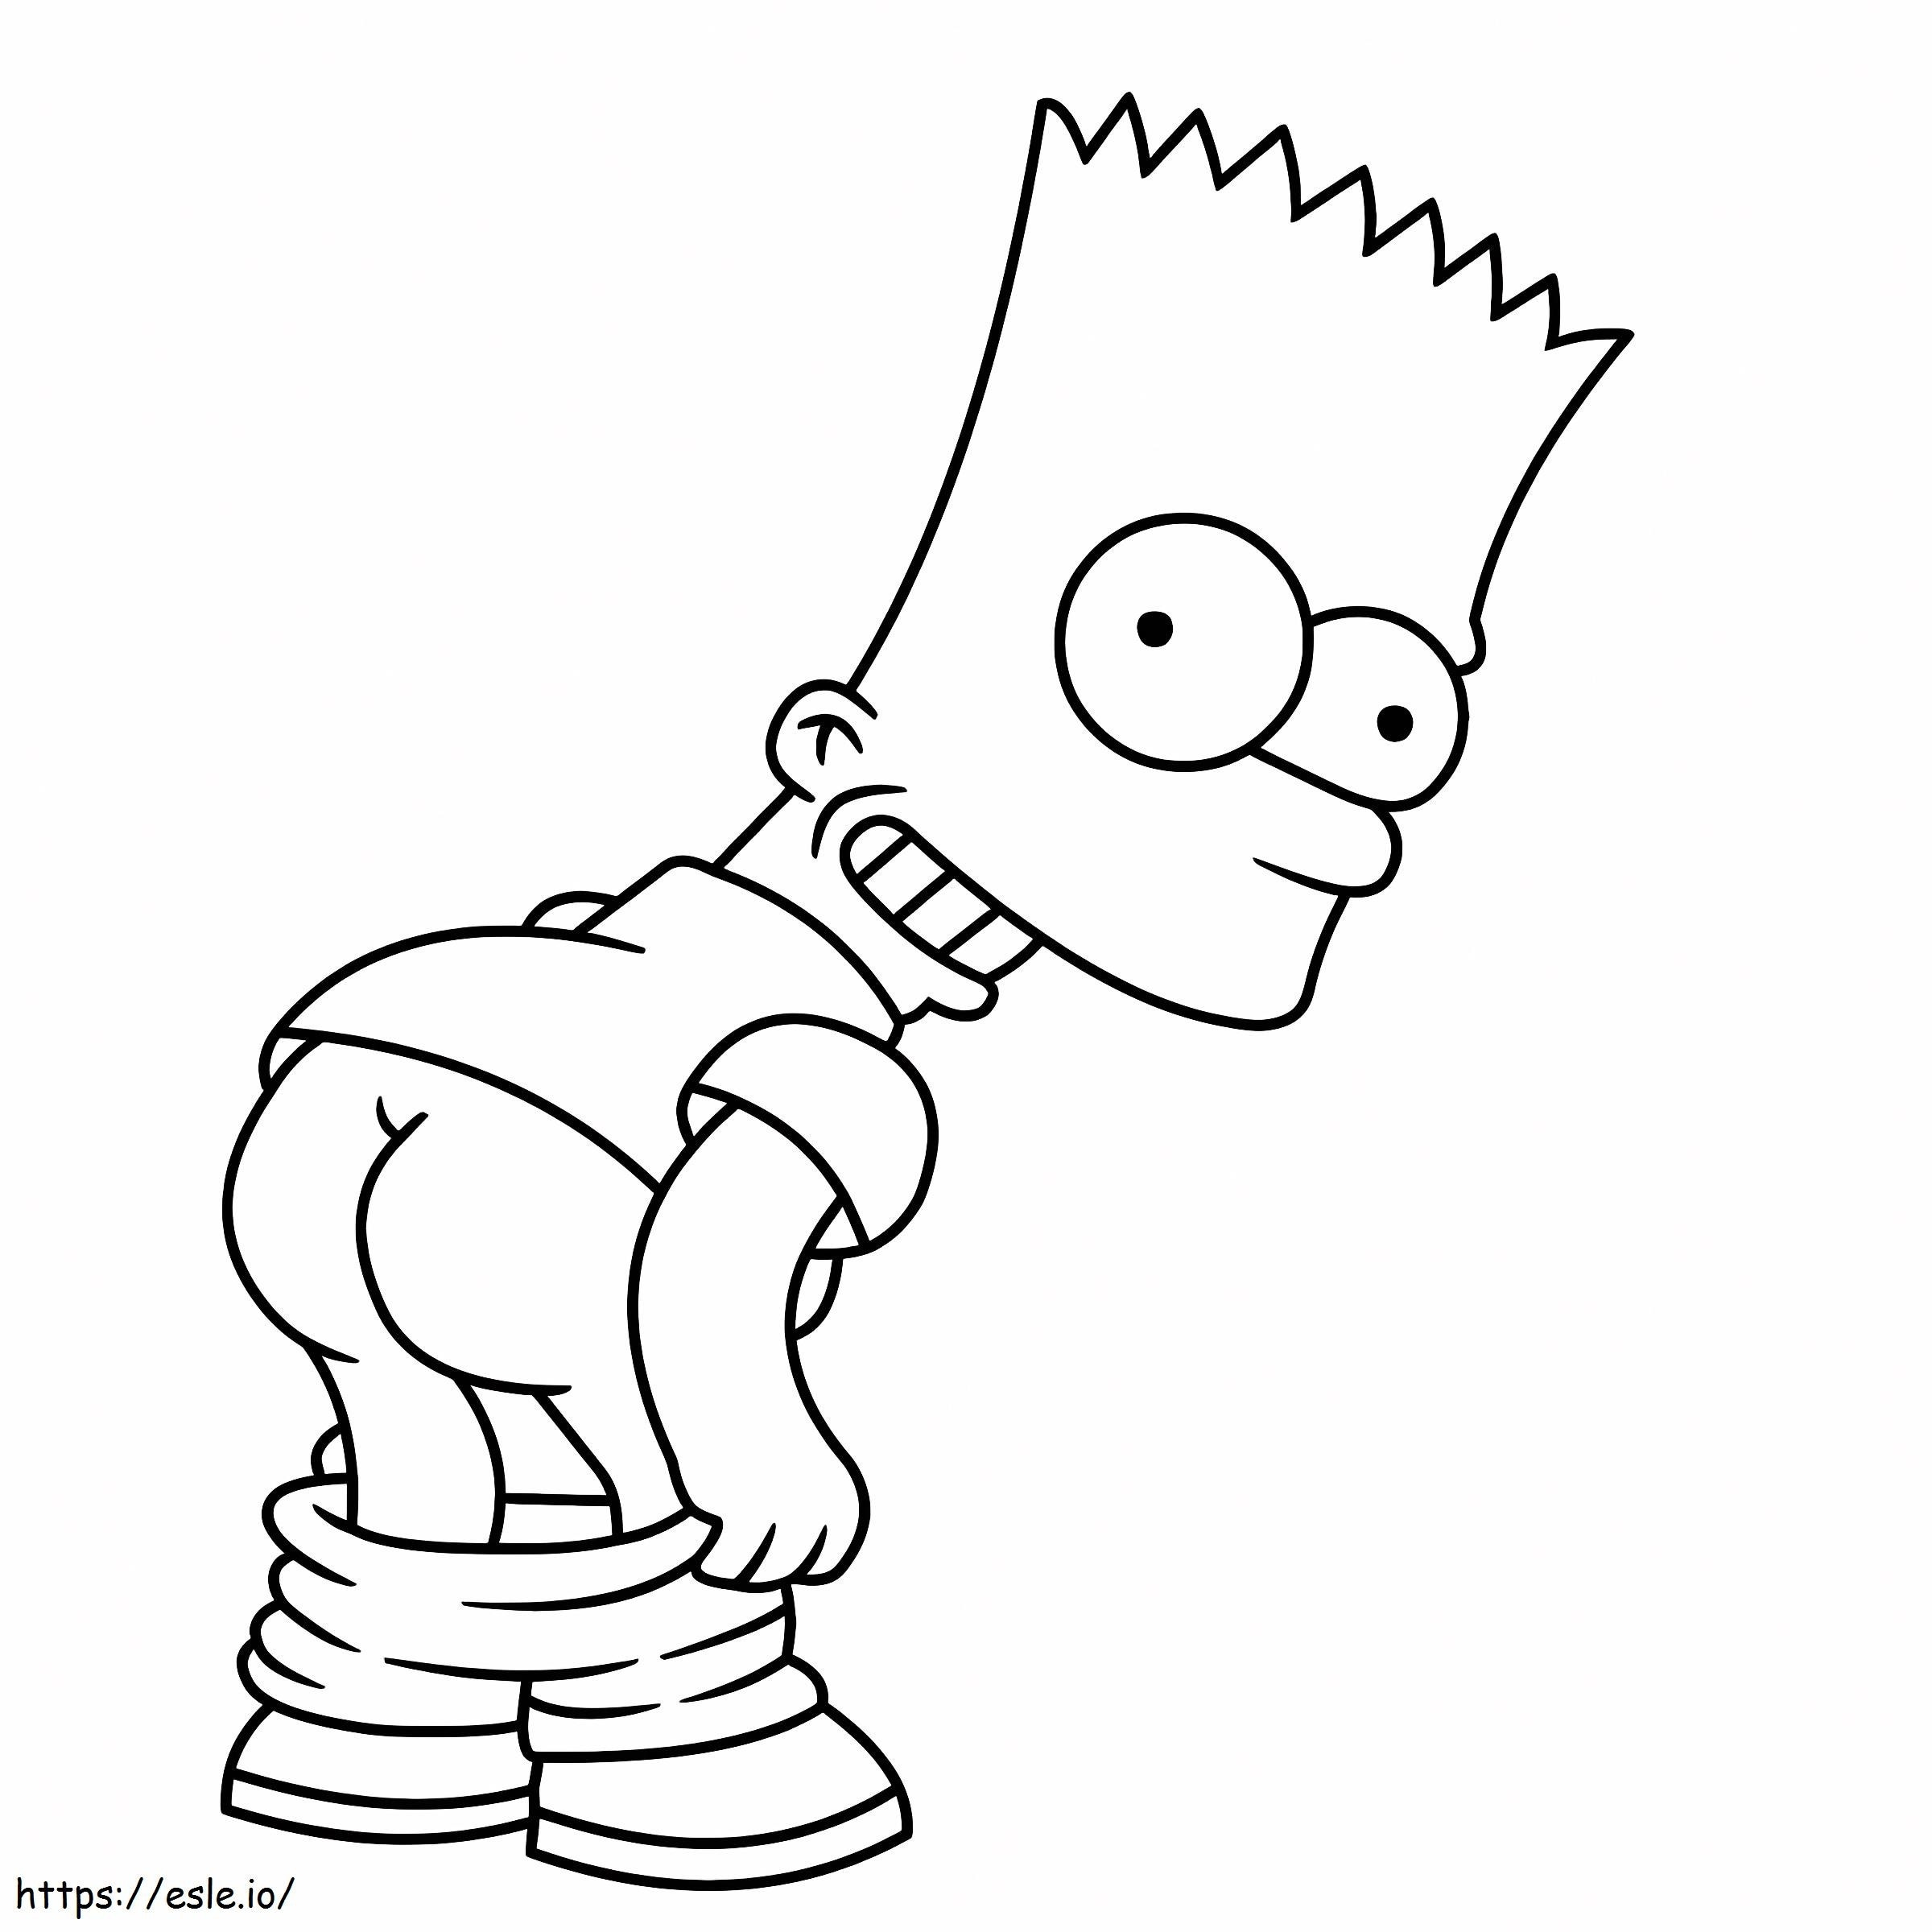 Bart SimpsonIs kleurplaat kleurplaat